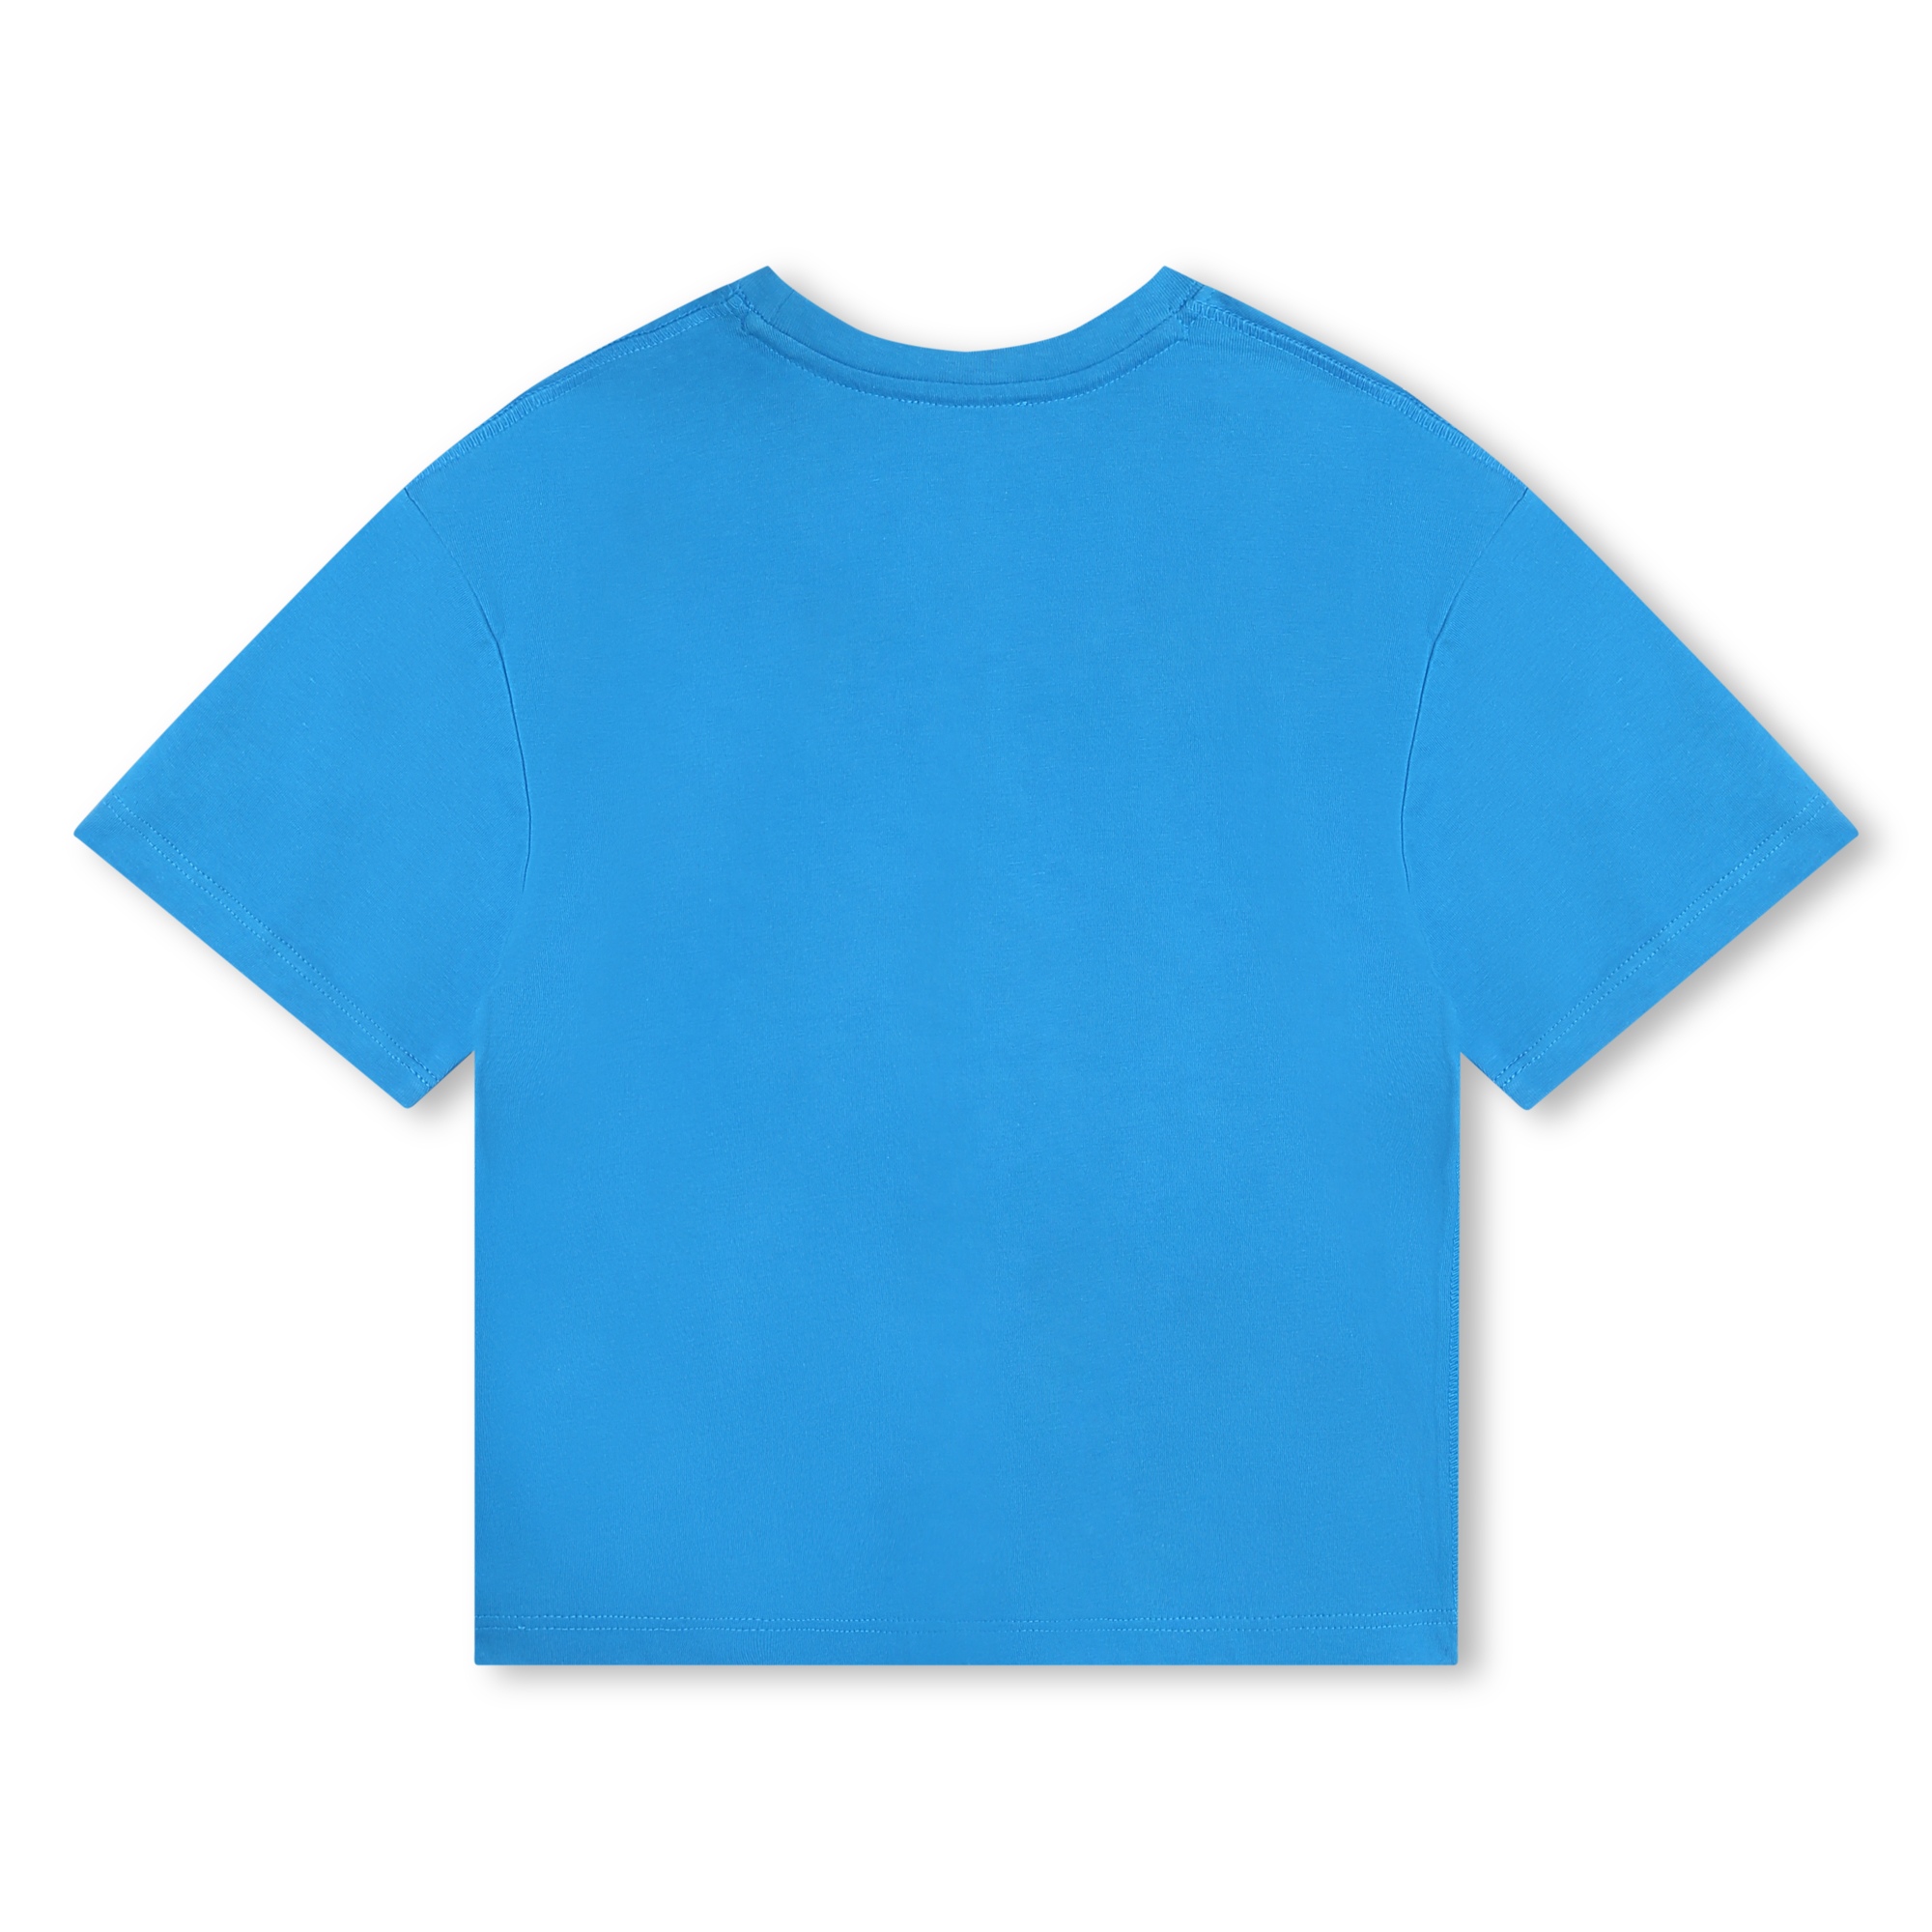 Kurzärmeliges Baumwoll-T-Shirt MARC JACOBS Für JUNGE